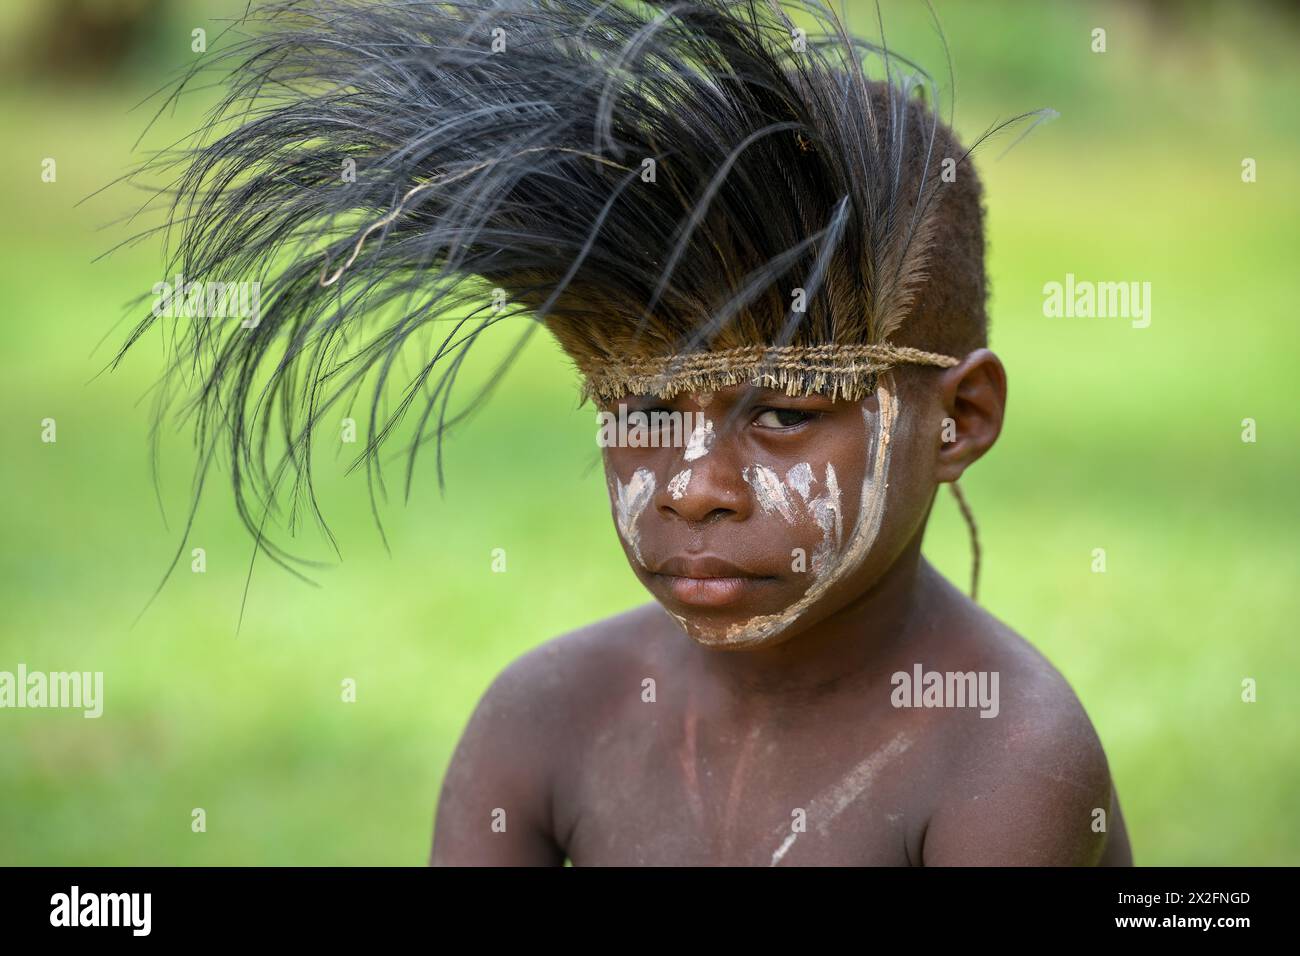 Géographie / voyage, Papouasie-Nouvelle-Guinée, jeune avec coiffe en plumes de Cassowary Feathers, ADDITIONAL-RIGHTS-CLEARANCE-INFO-NOT-AVAILABLE Banque D'Images